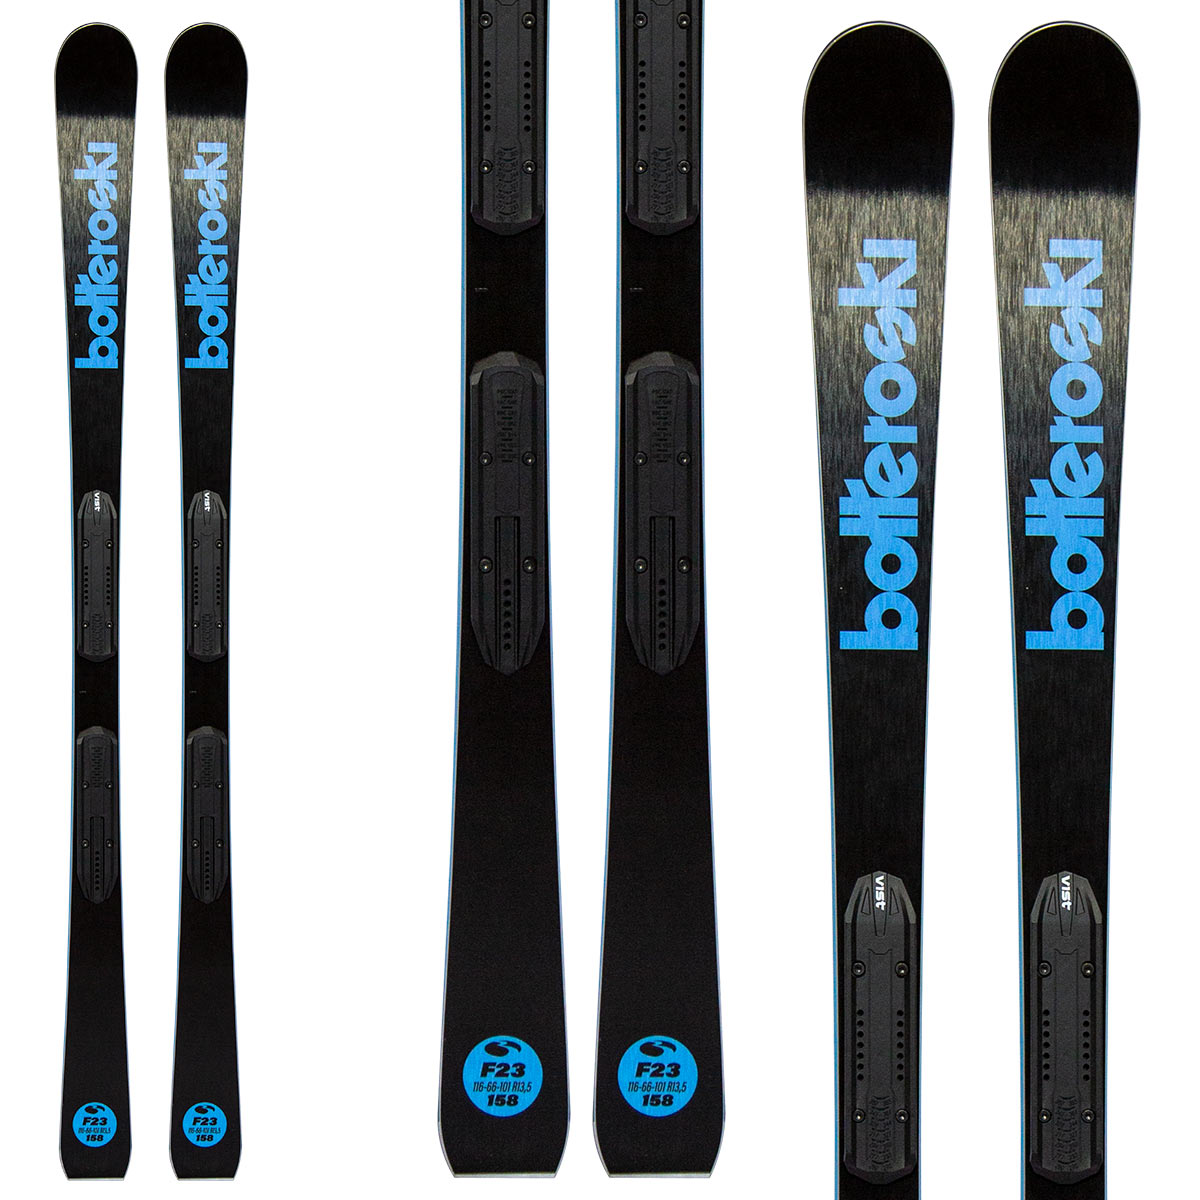  Sci Bottero Ski F23 + Speed System + Vsp310 (Colore: nero-blu, Taglia: 158) 